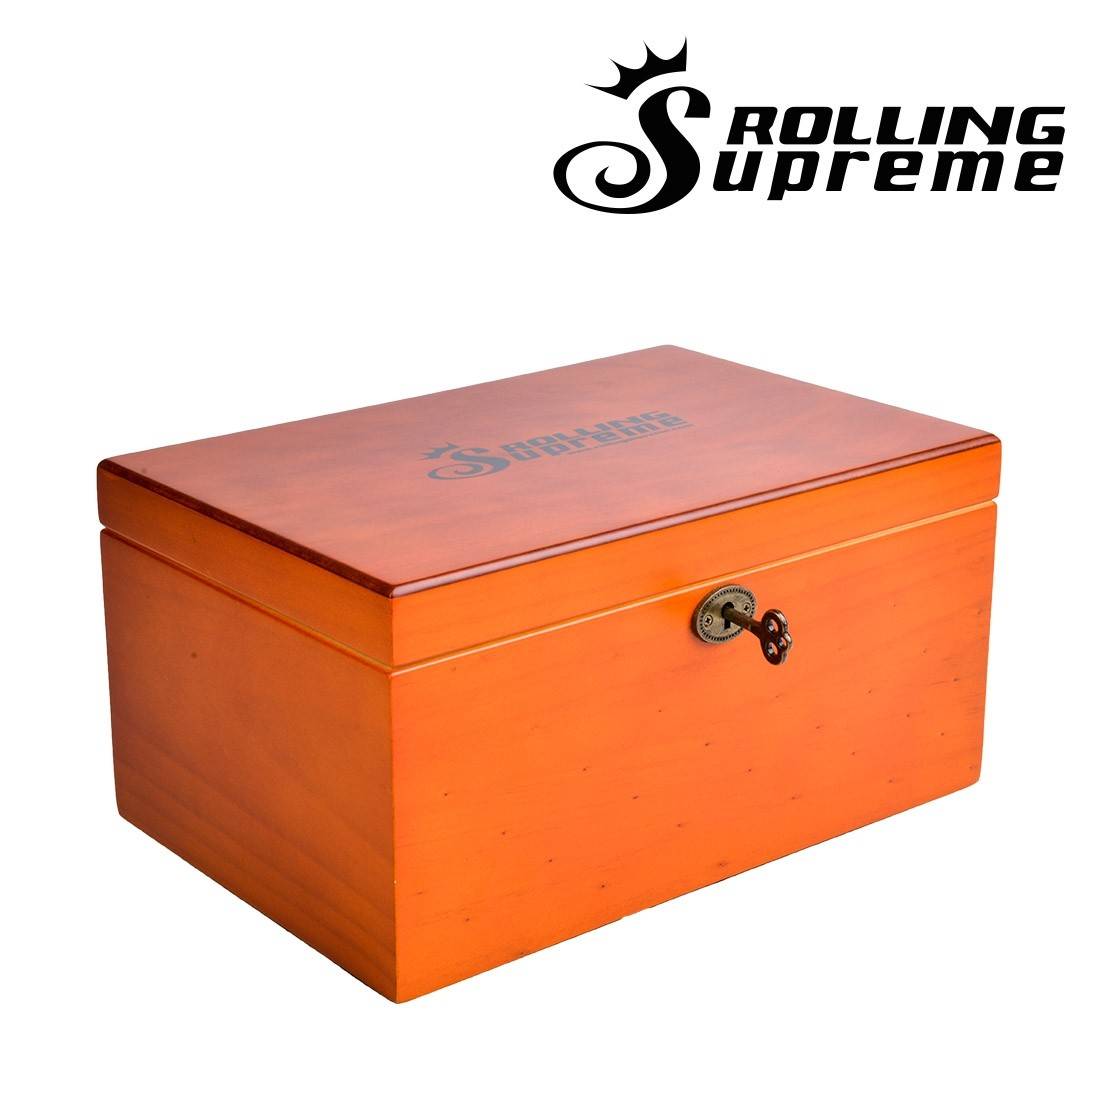 Boîte Rolling Supreme G7, disponible sur S Factory !